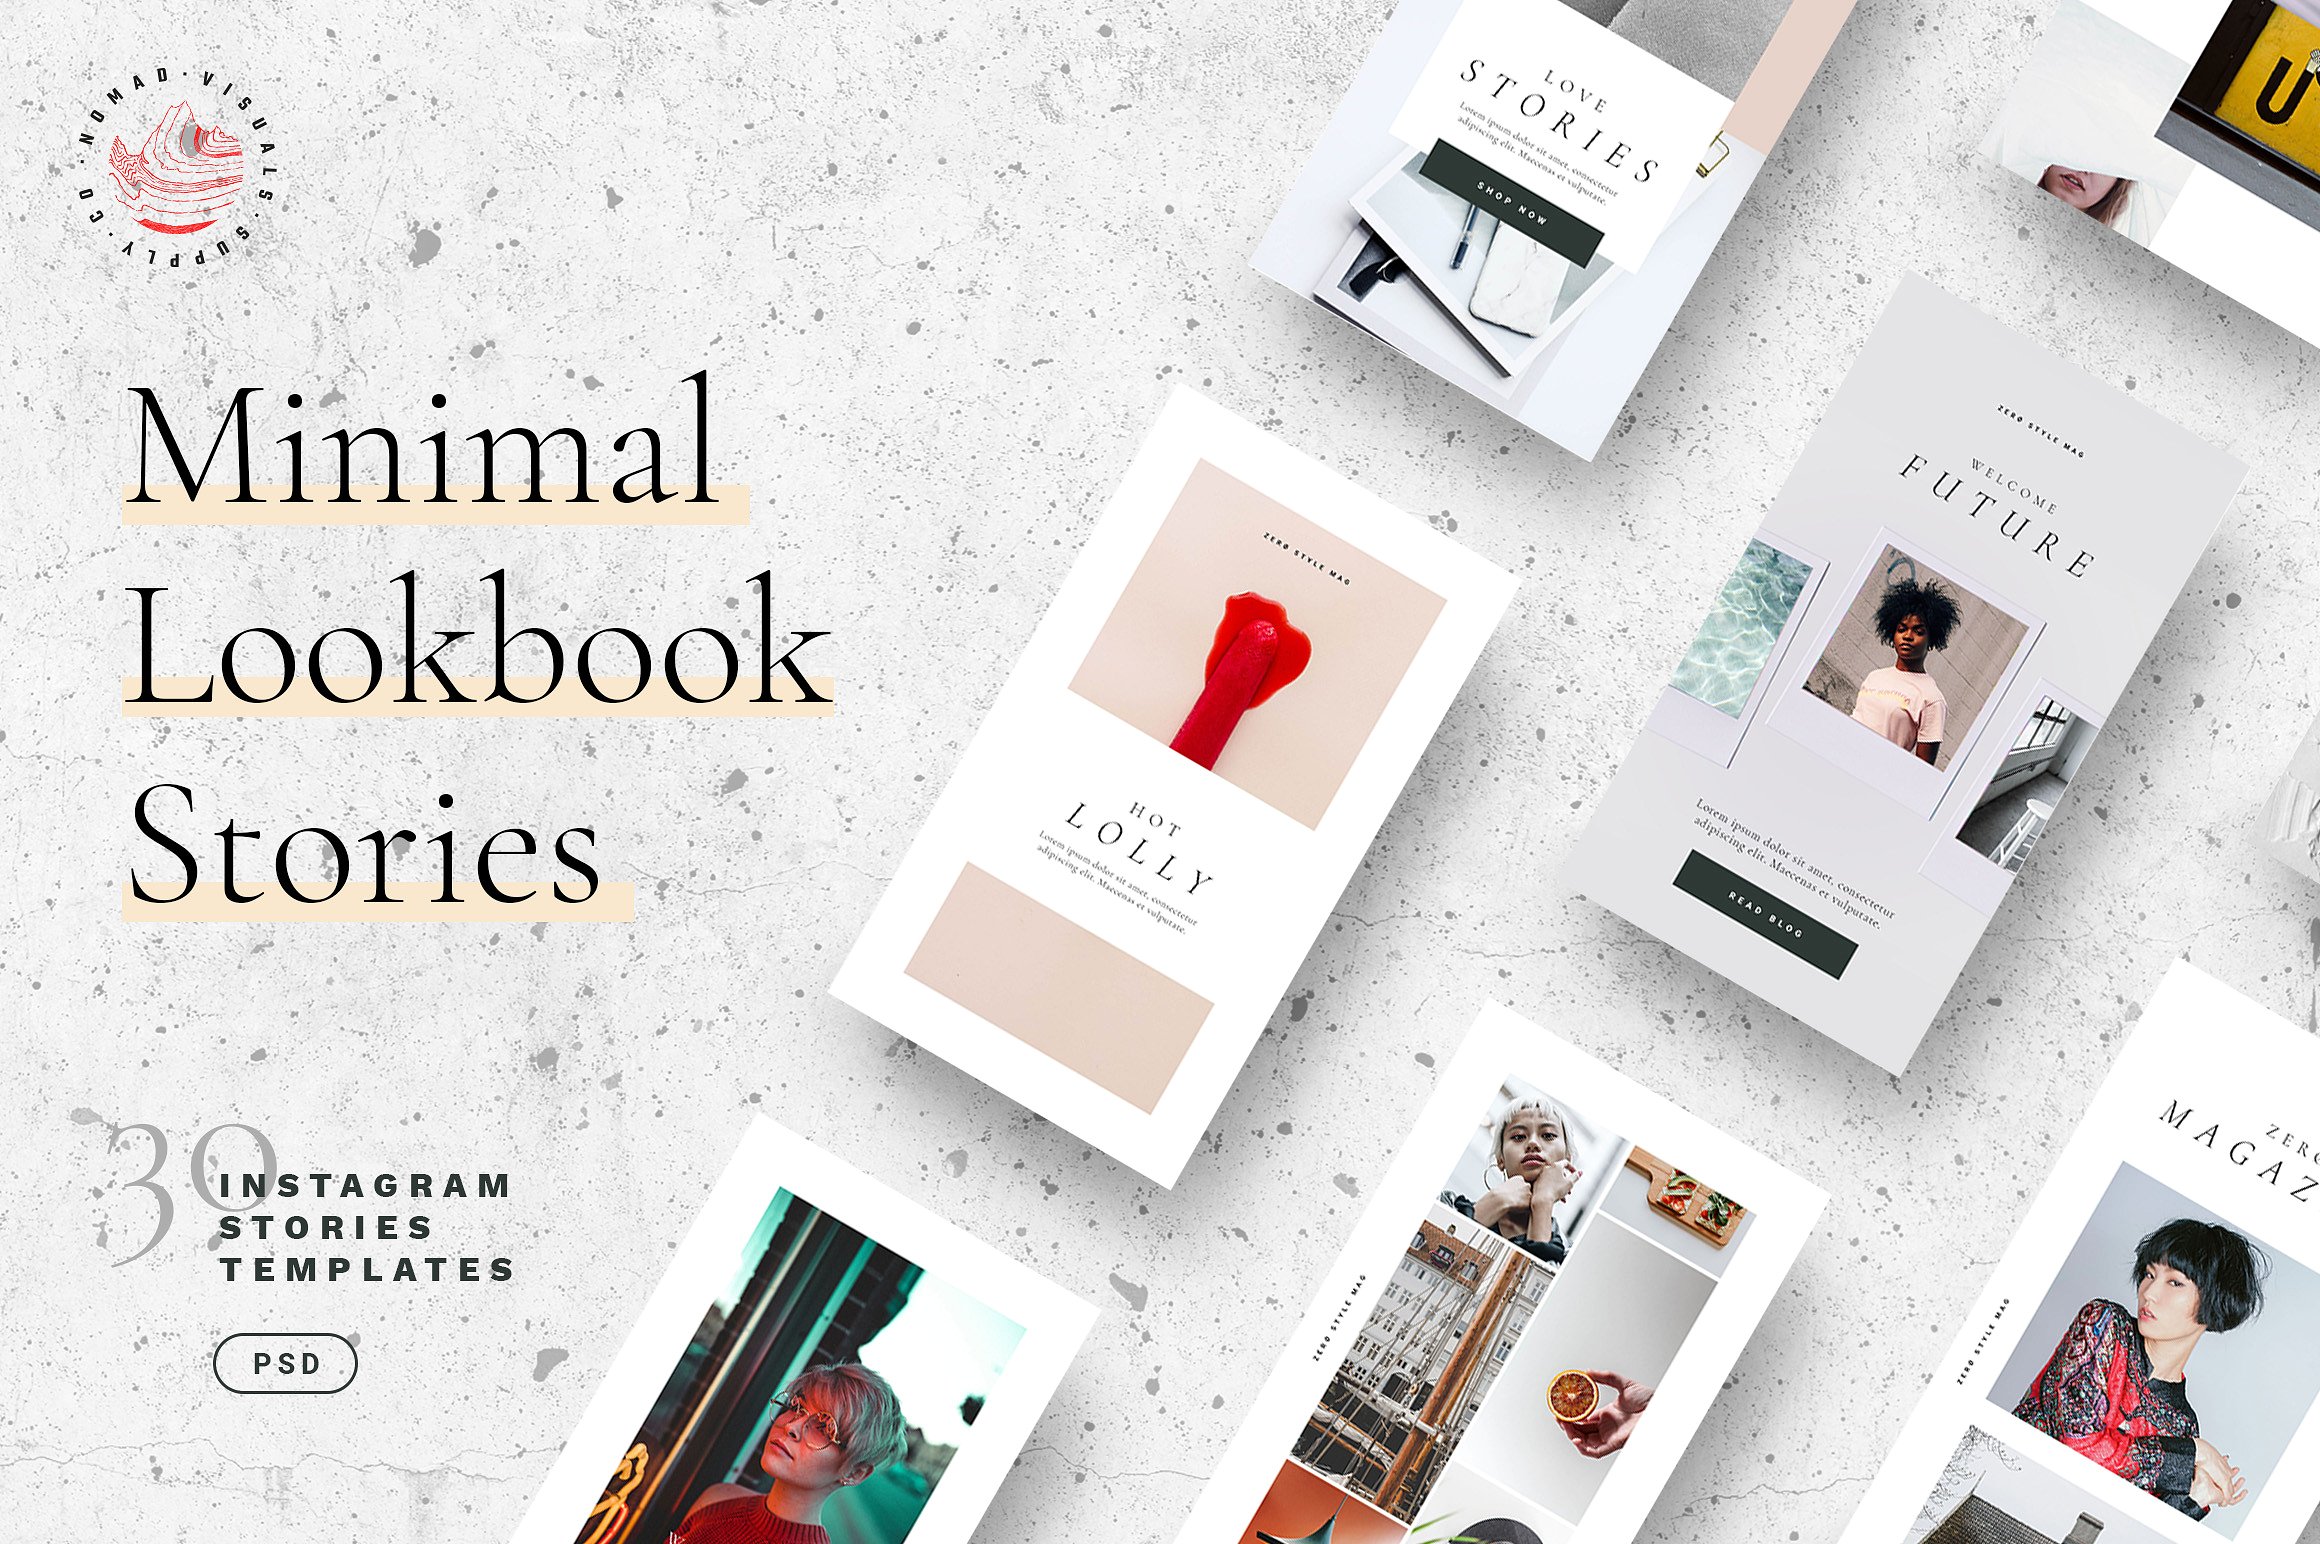 30个独特时尚的Lookbook社交媒体Instagram故事模板大洋岛精选 Minimal Lookbook Instagram Stories [psd]插图